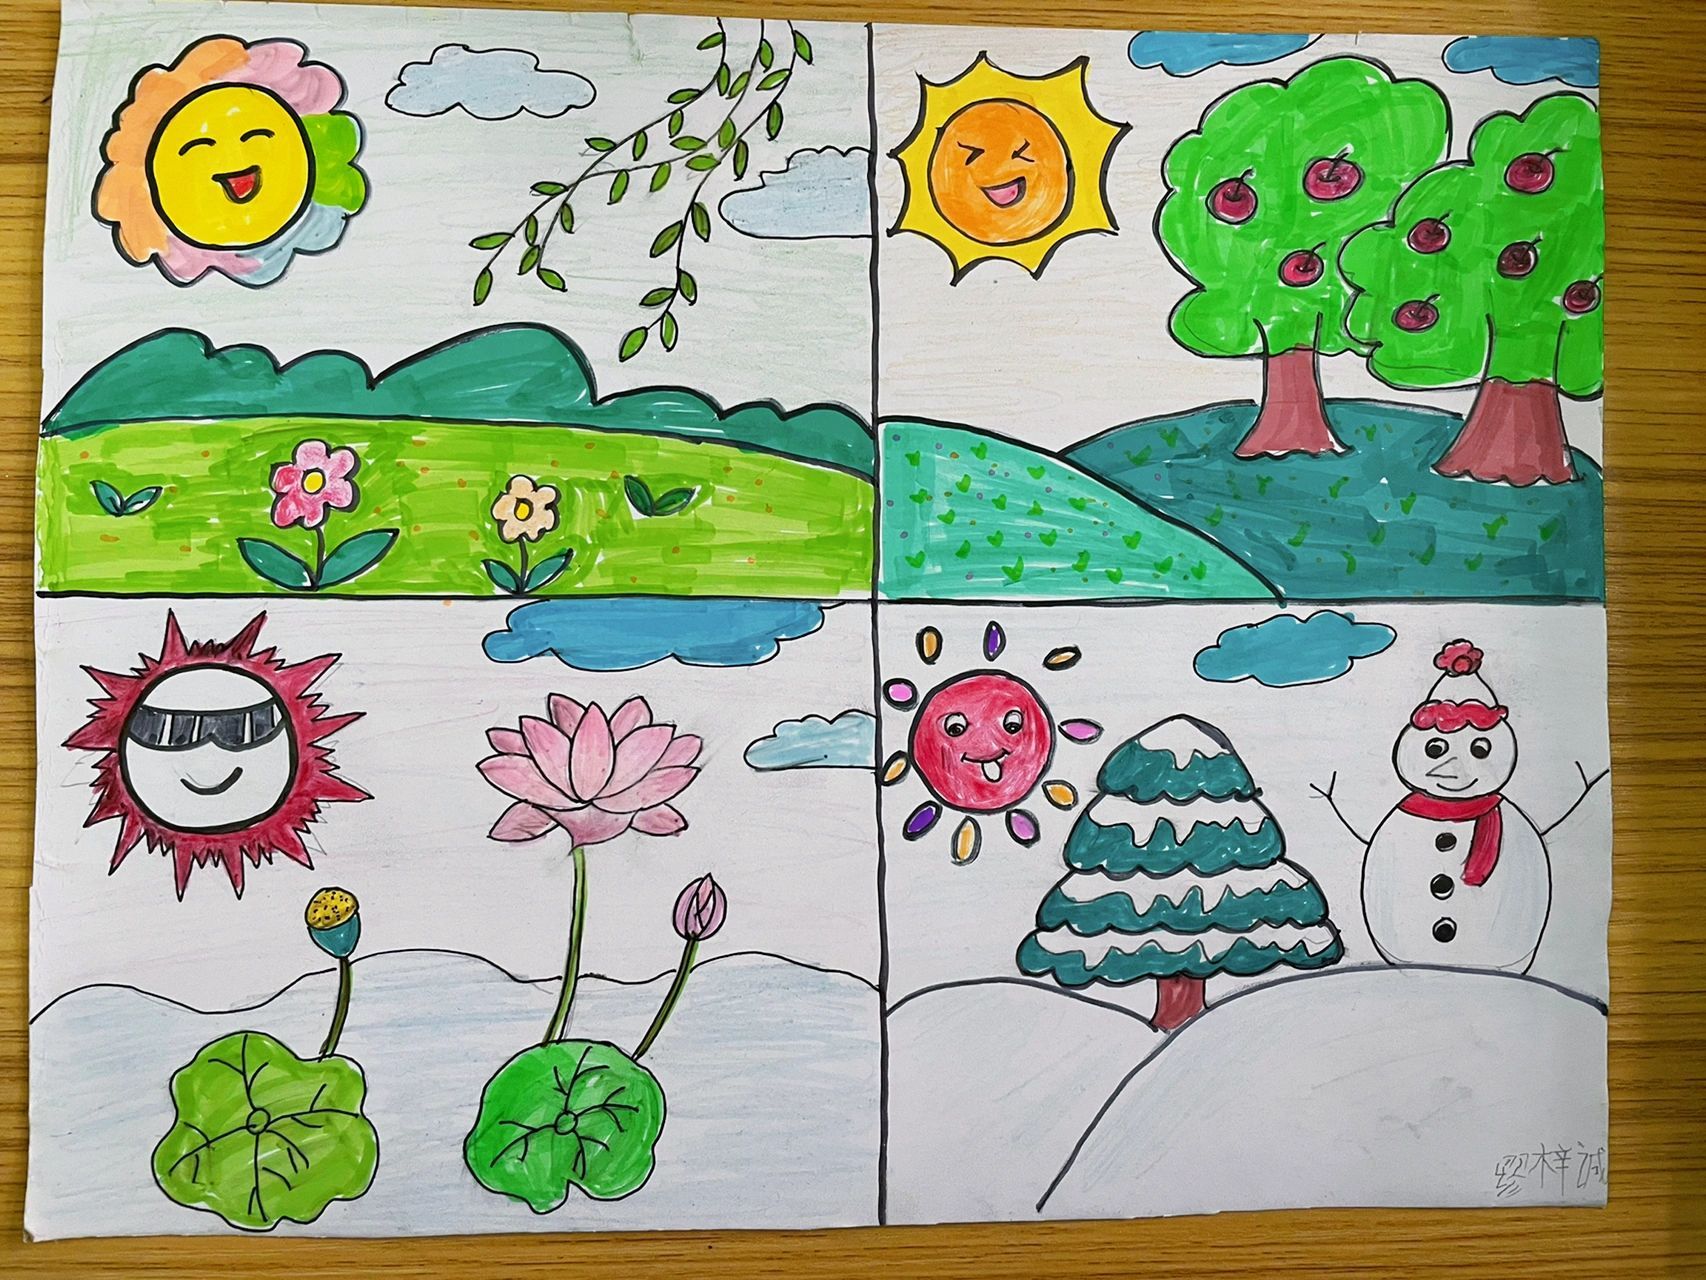 《四个太阳》 画一画:你会为每个季节画什么颜色的太阳?